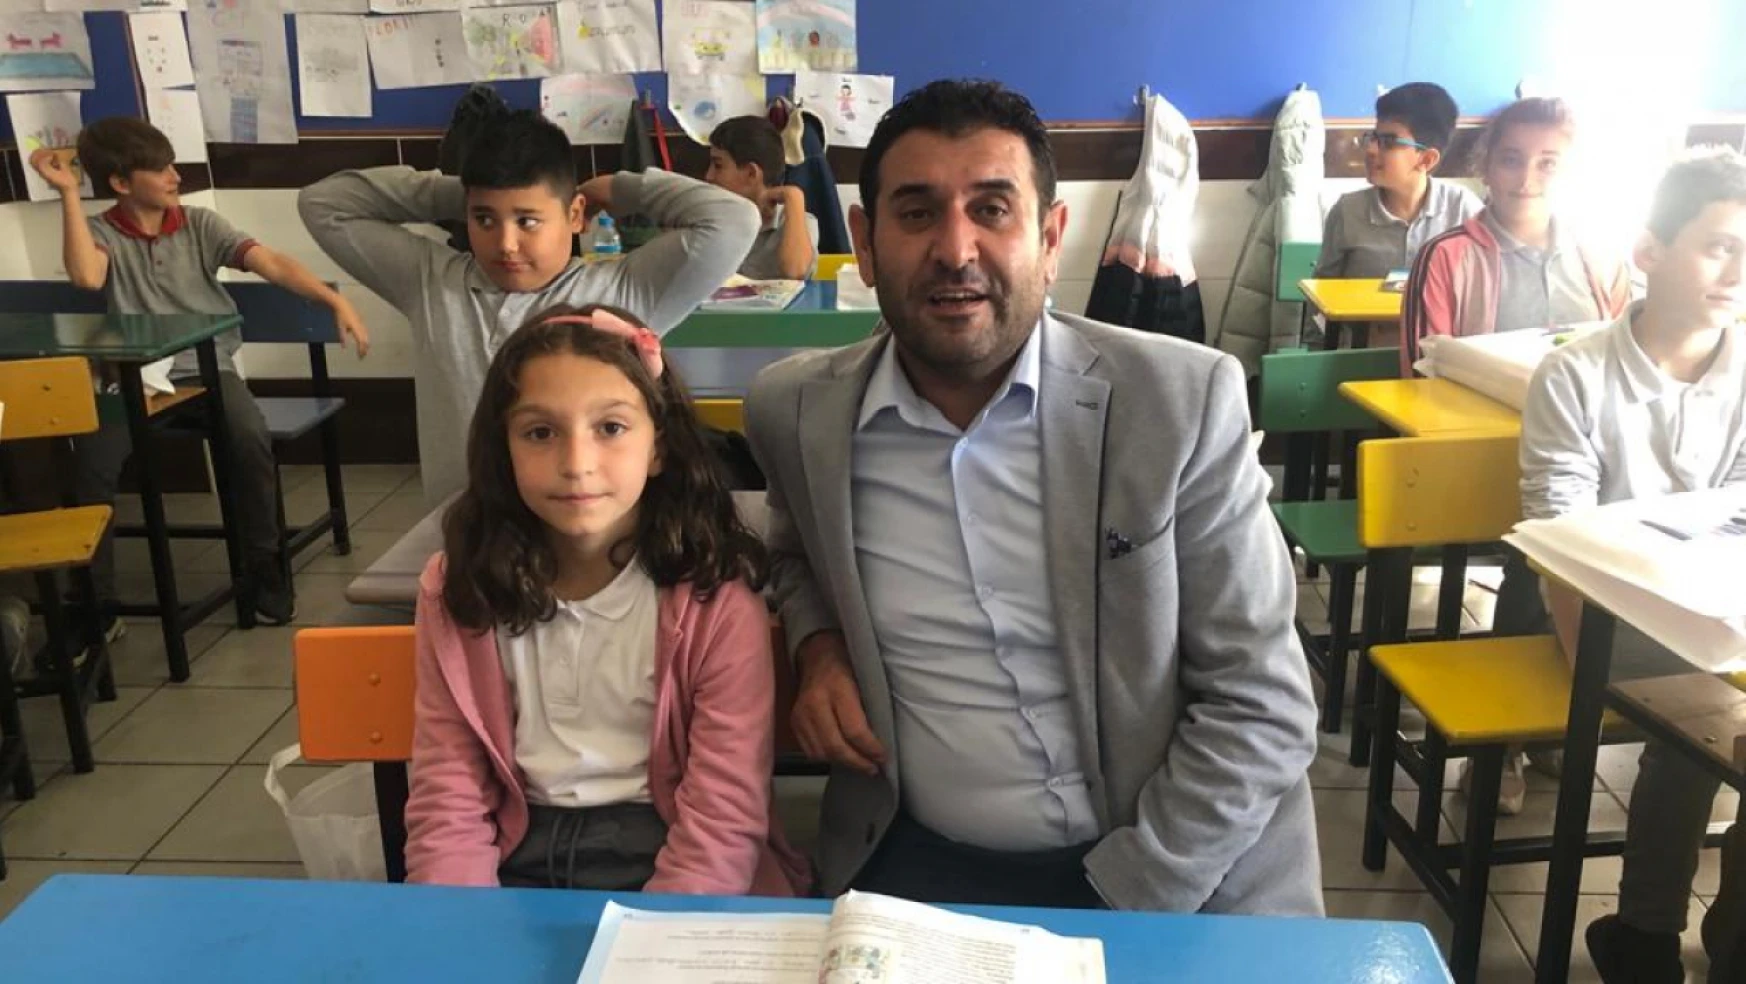 Konya'da sınıf başkanı seçilen öğrencinin seçim vaadi gerçek oldu!